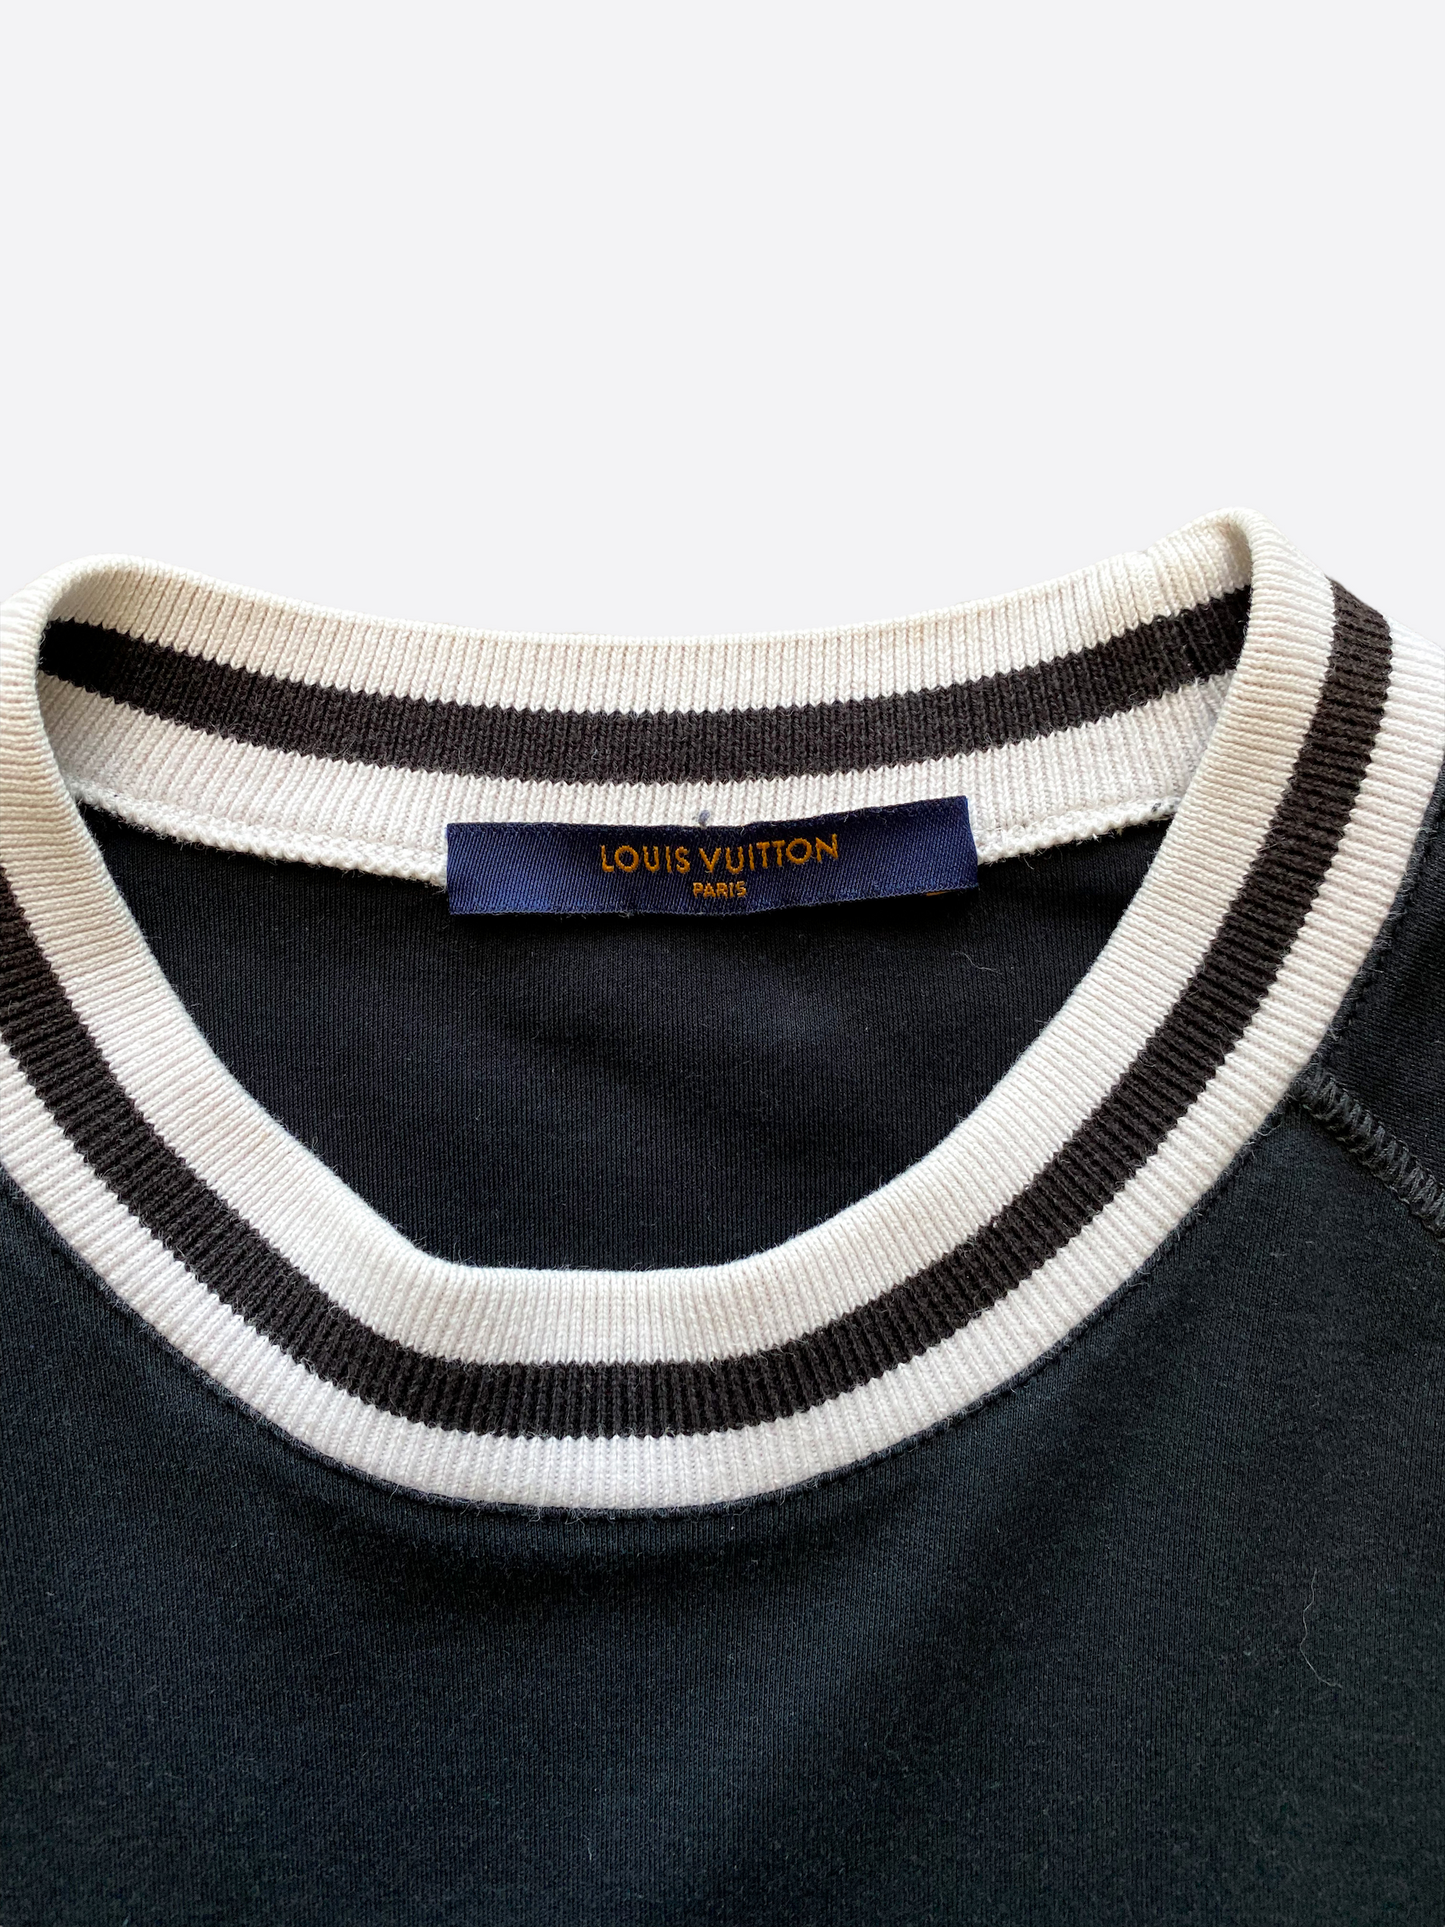 Louis Vuitton, Shirts, Louis Vuitton Upside Down Logo Sweatshirt Sz Small